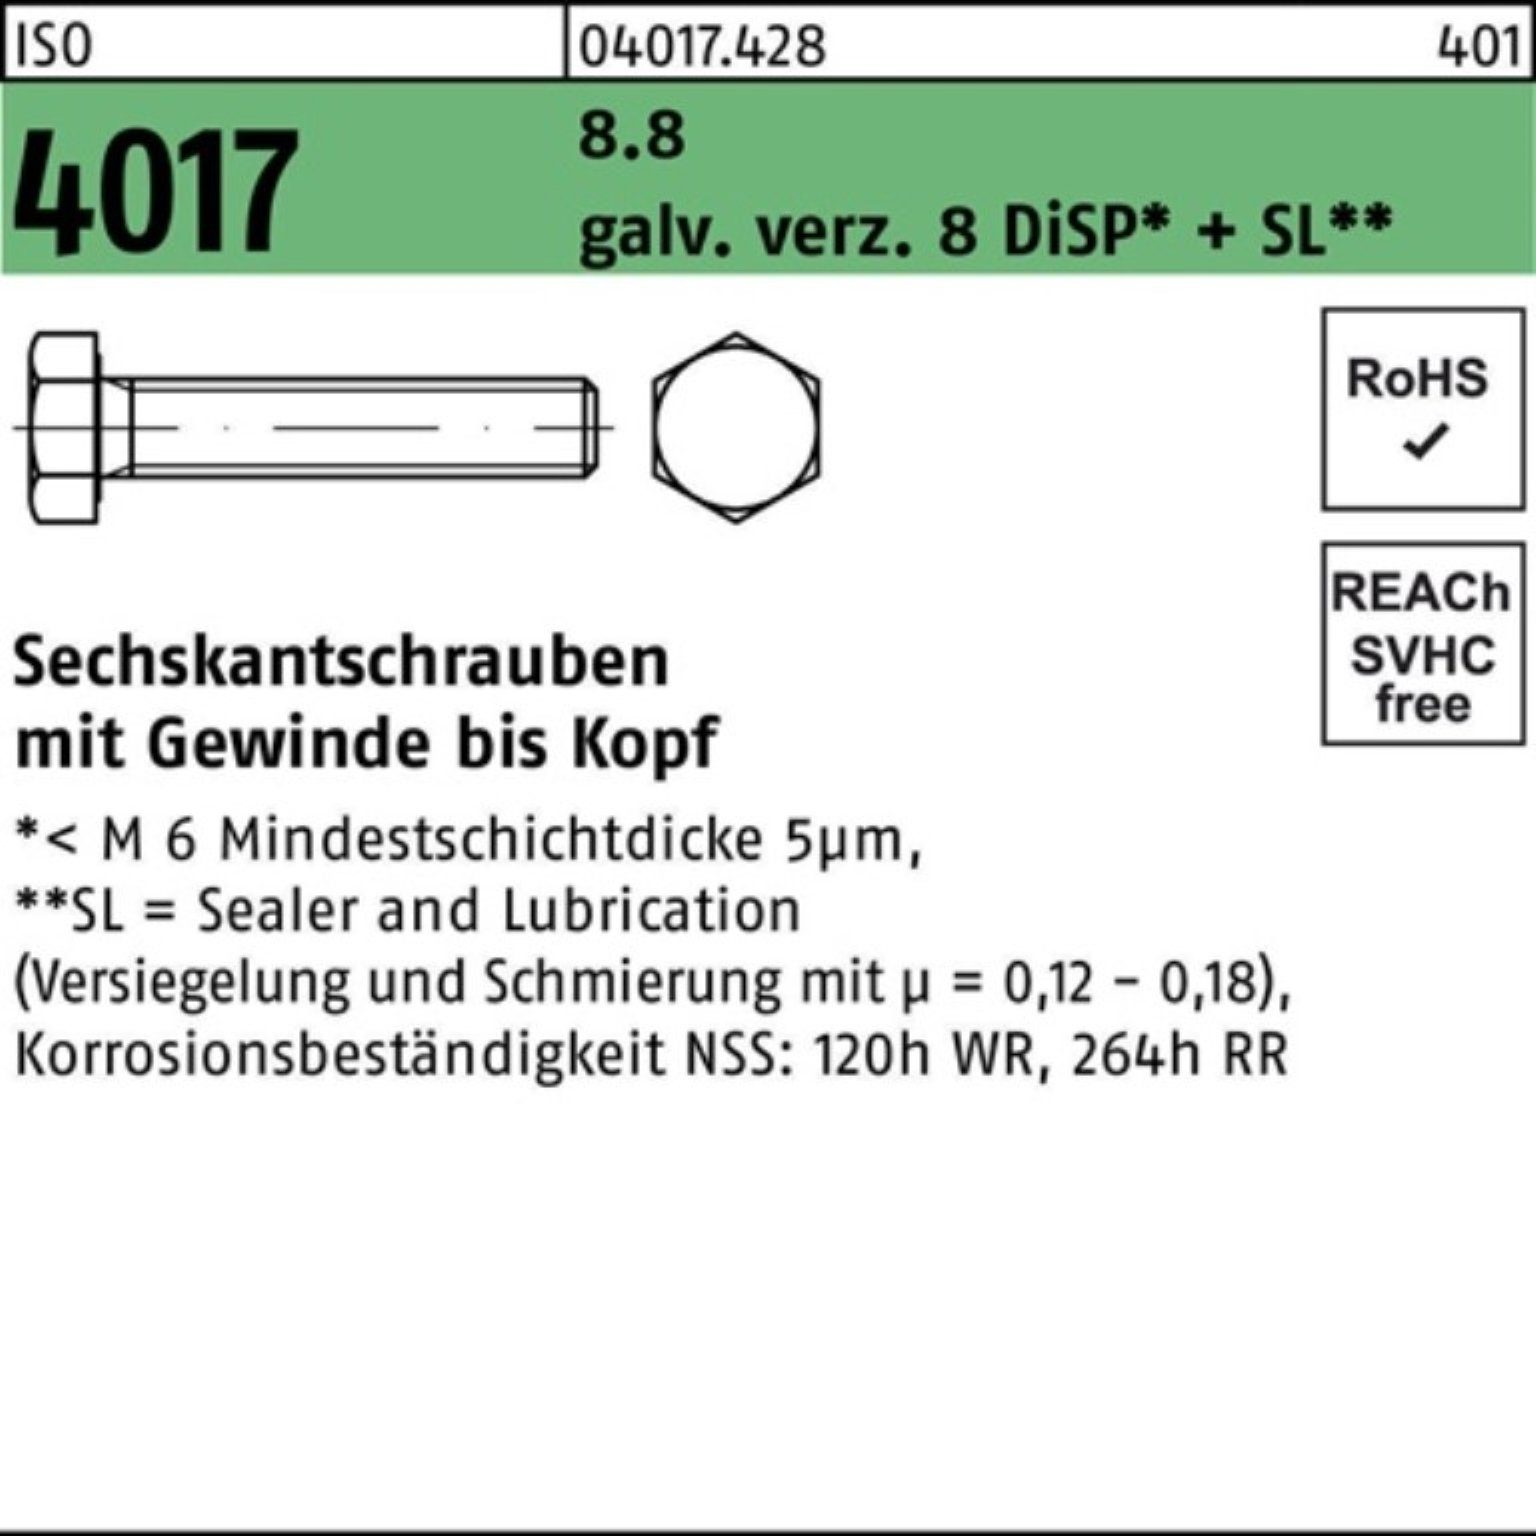 Bufab Sechskantschraube 100er Pack Sechskantschraube ISO 4017 VG M20x 55 8.8 galv.verz. 8 DiSP